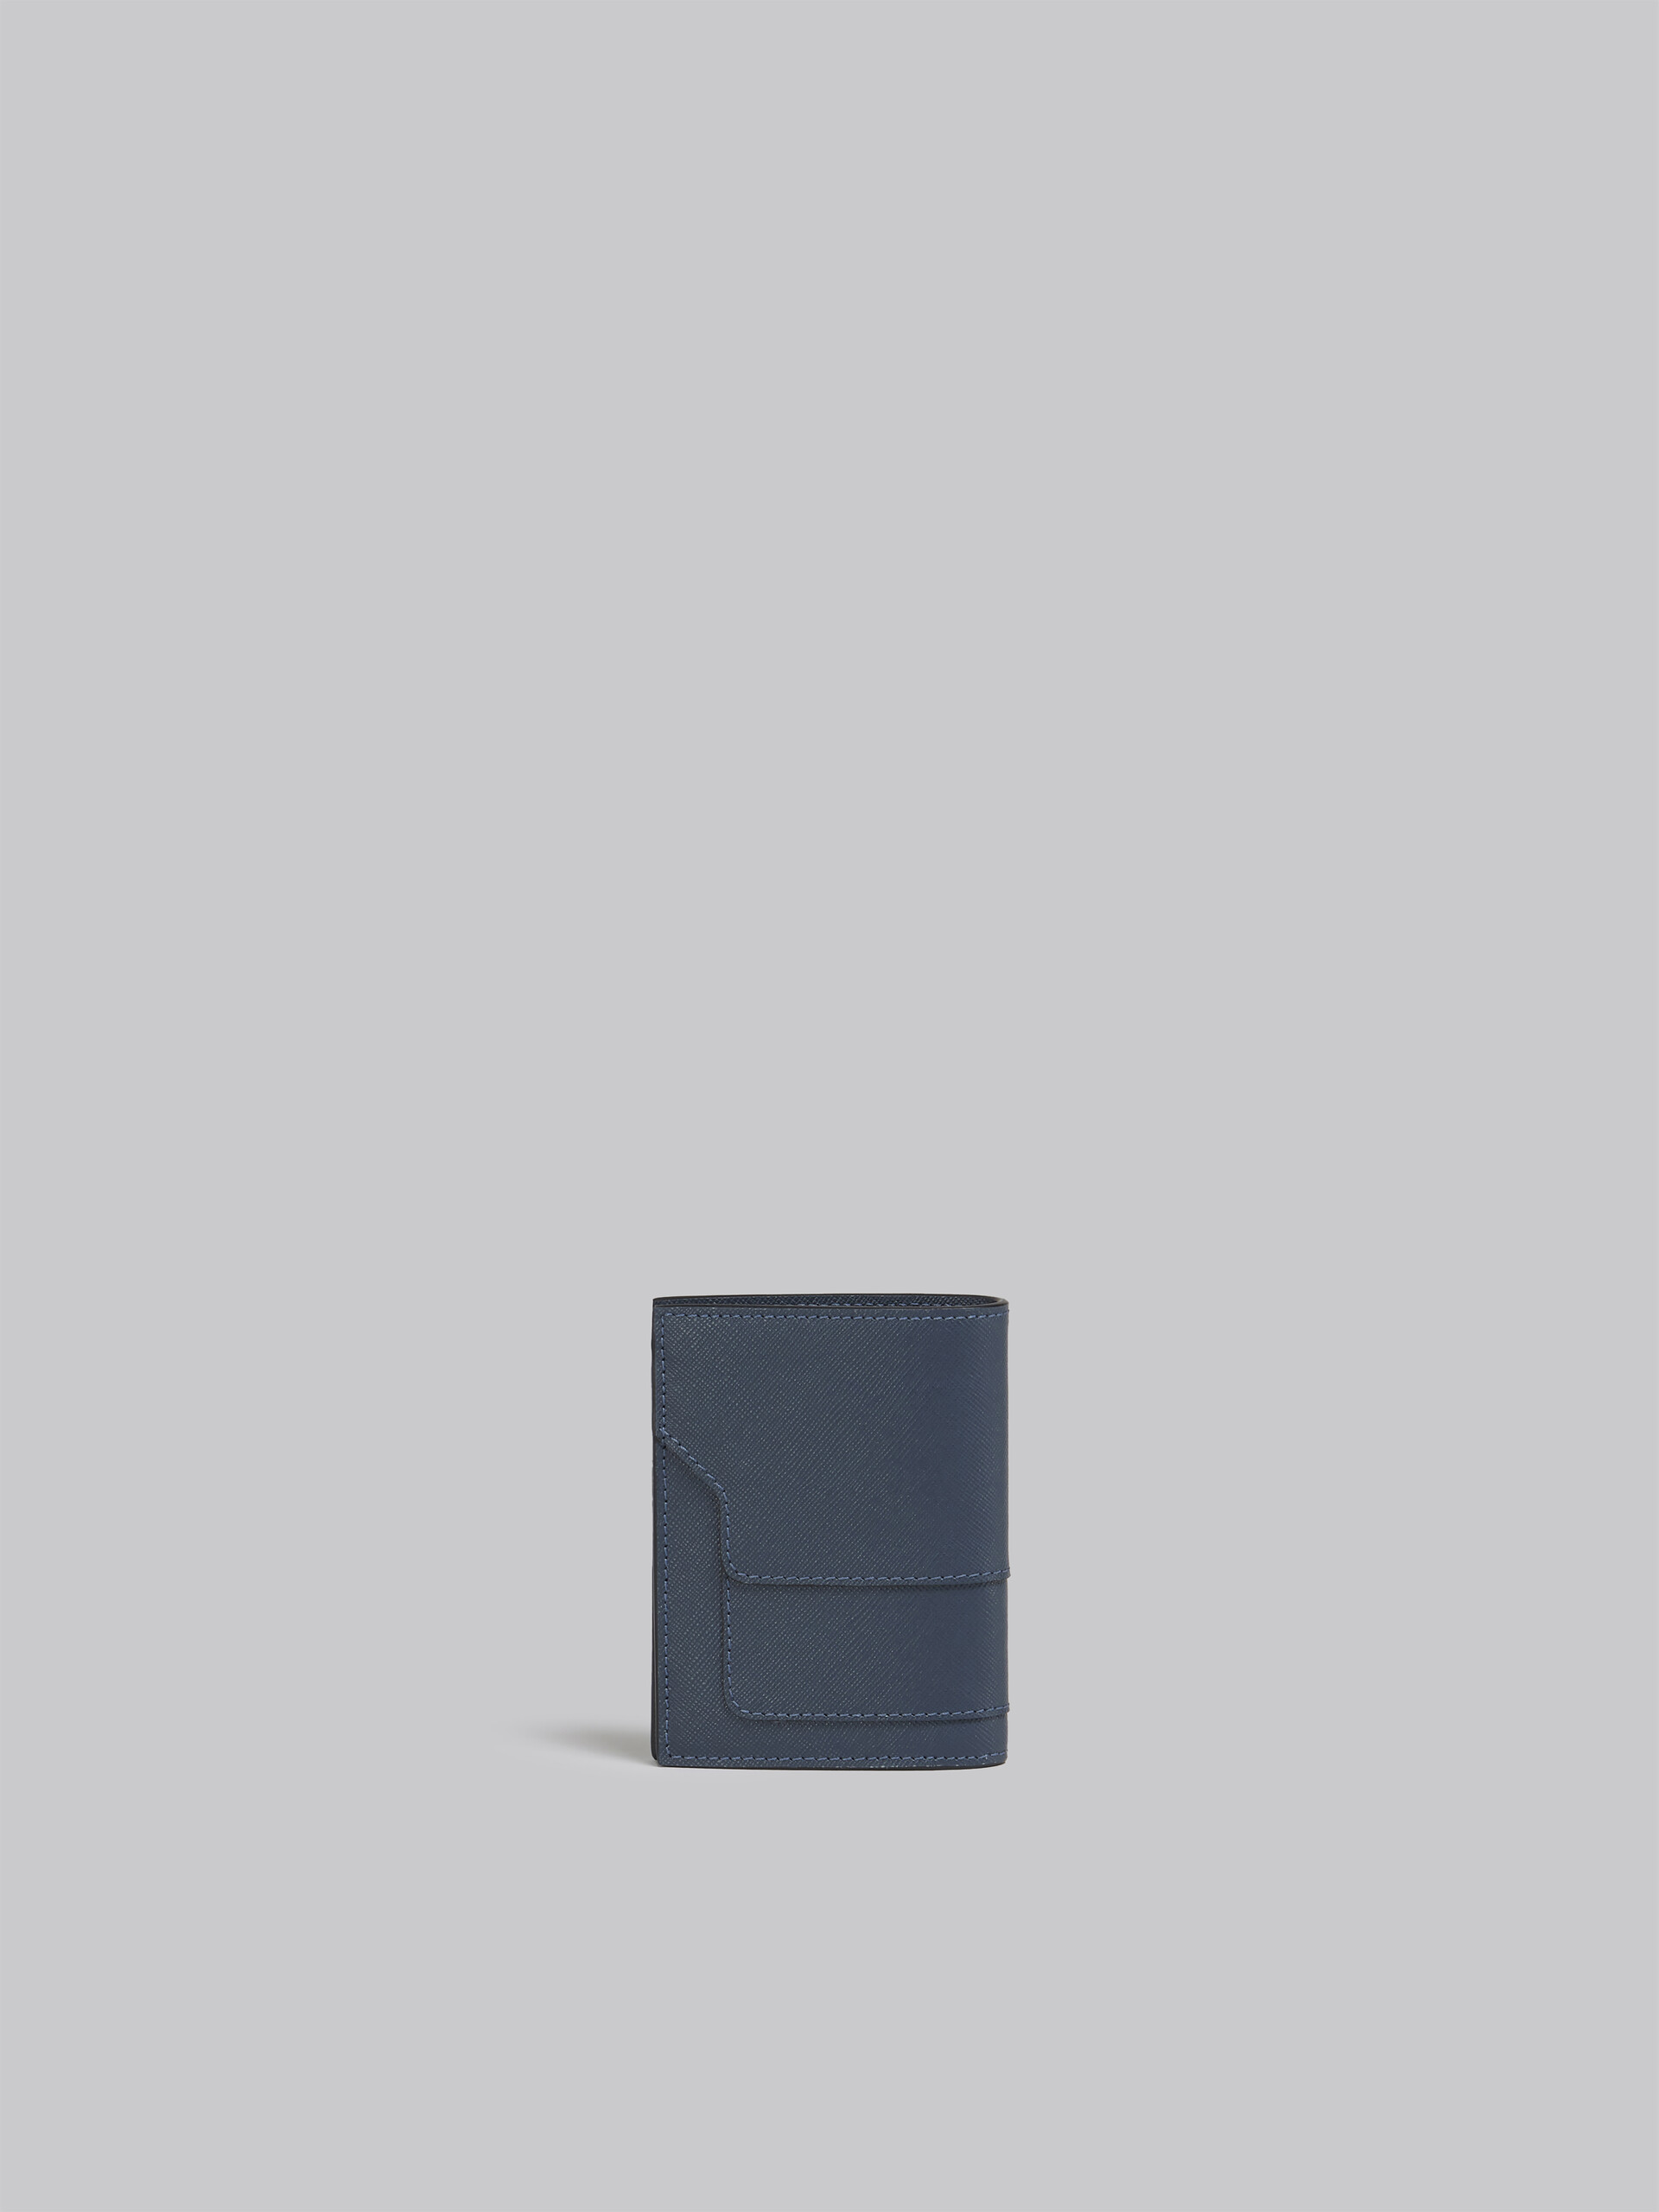 Portafoglio bi-fold in vitello Saffiano blu - Portafogli - Image 3